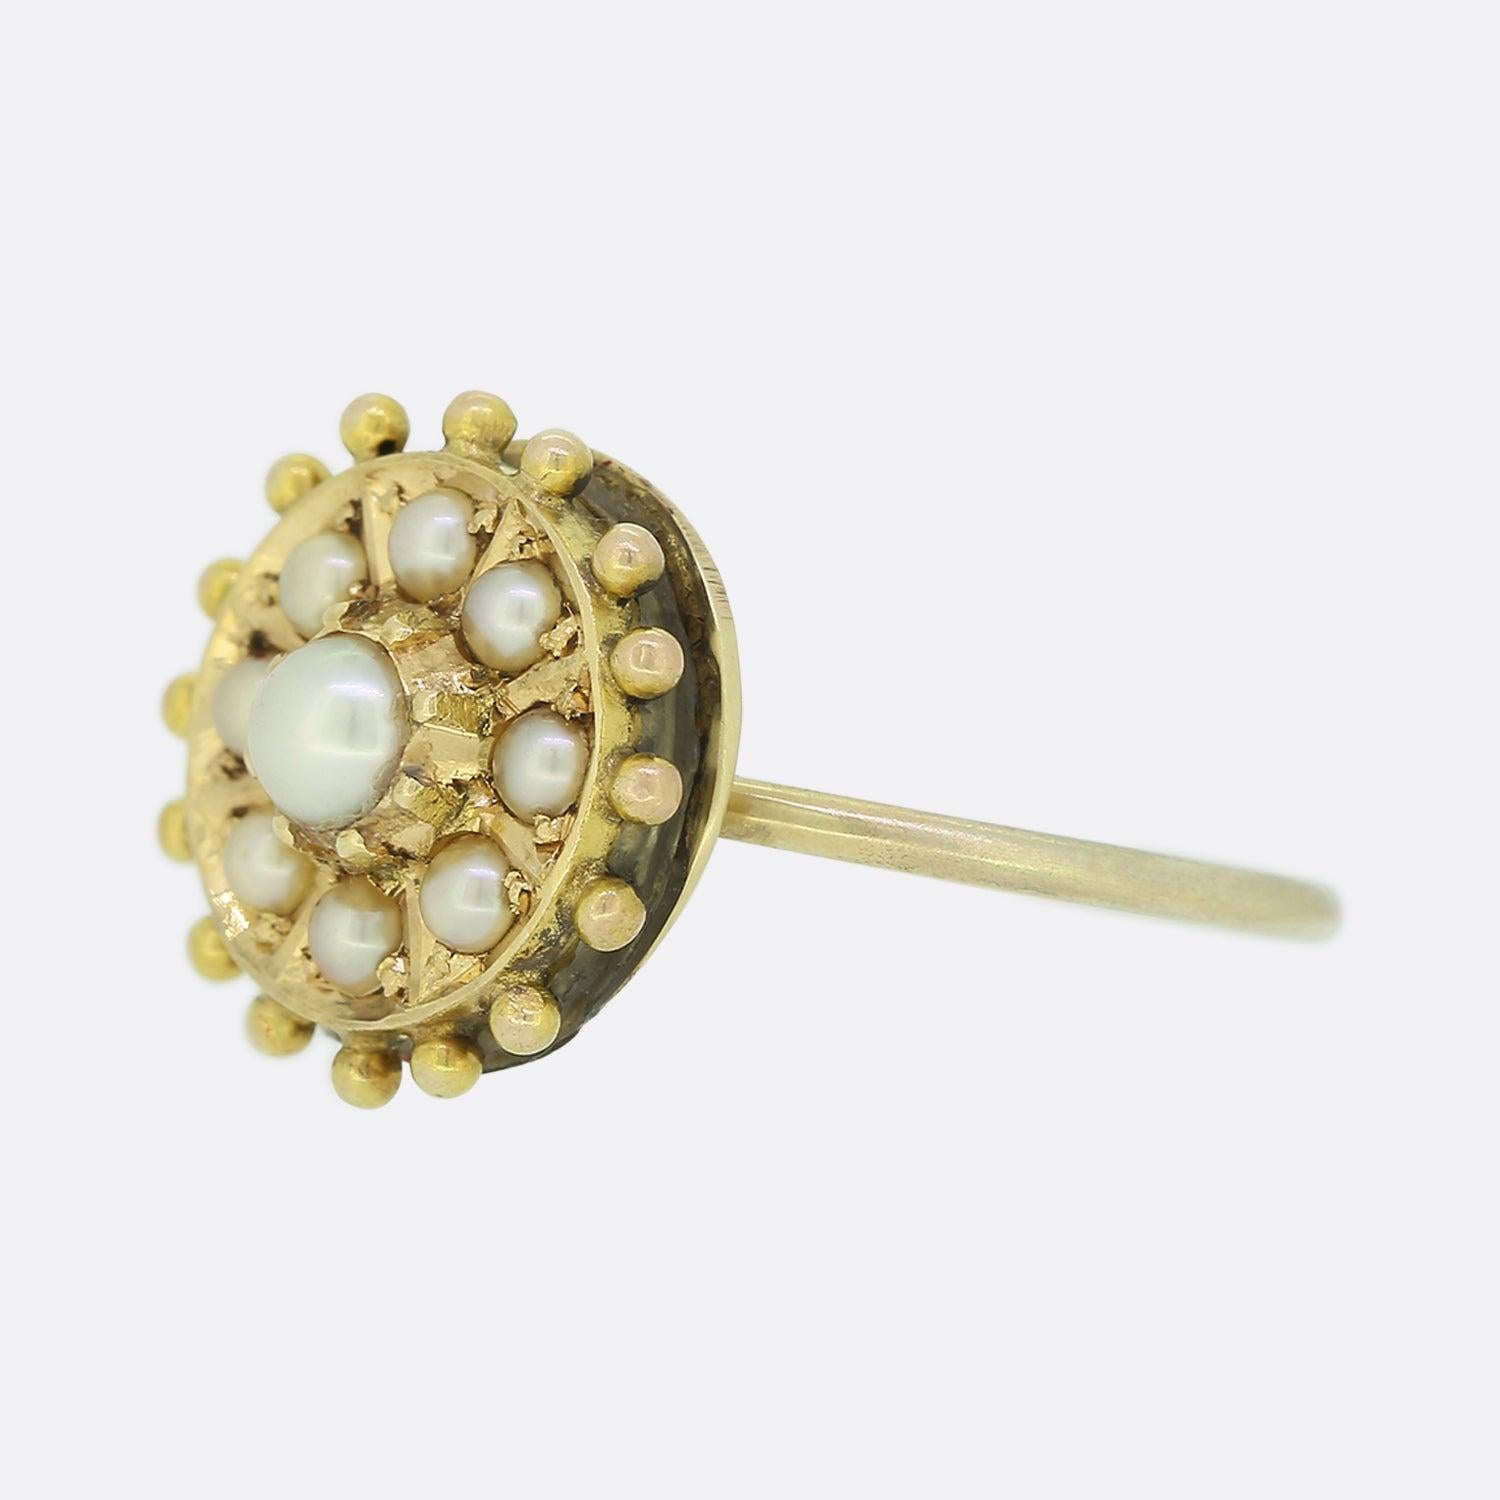 Dies ist ein schöner antiker viktorianischer Perlenring. Der Ring besteht aus einer zentralen Perle, die von acht weiteren Perlen in einer etruskischen Fassung aus Gold umgeben ist. Dieser Ring war ursprünglich eine antike viktorianische Brosche,